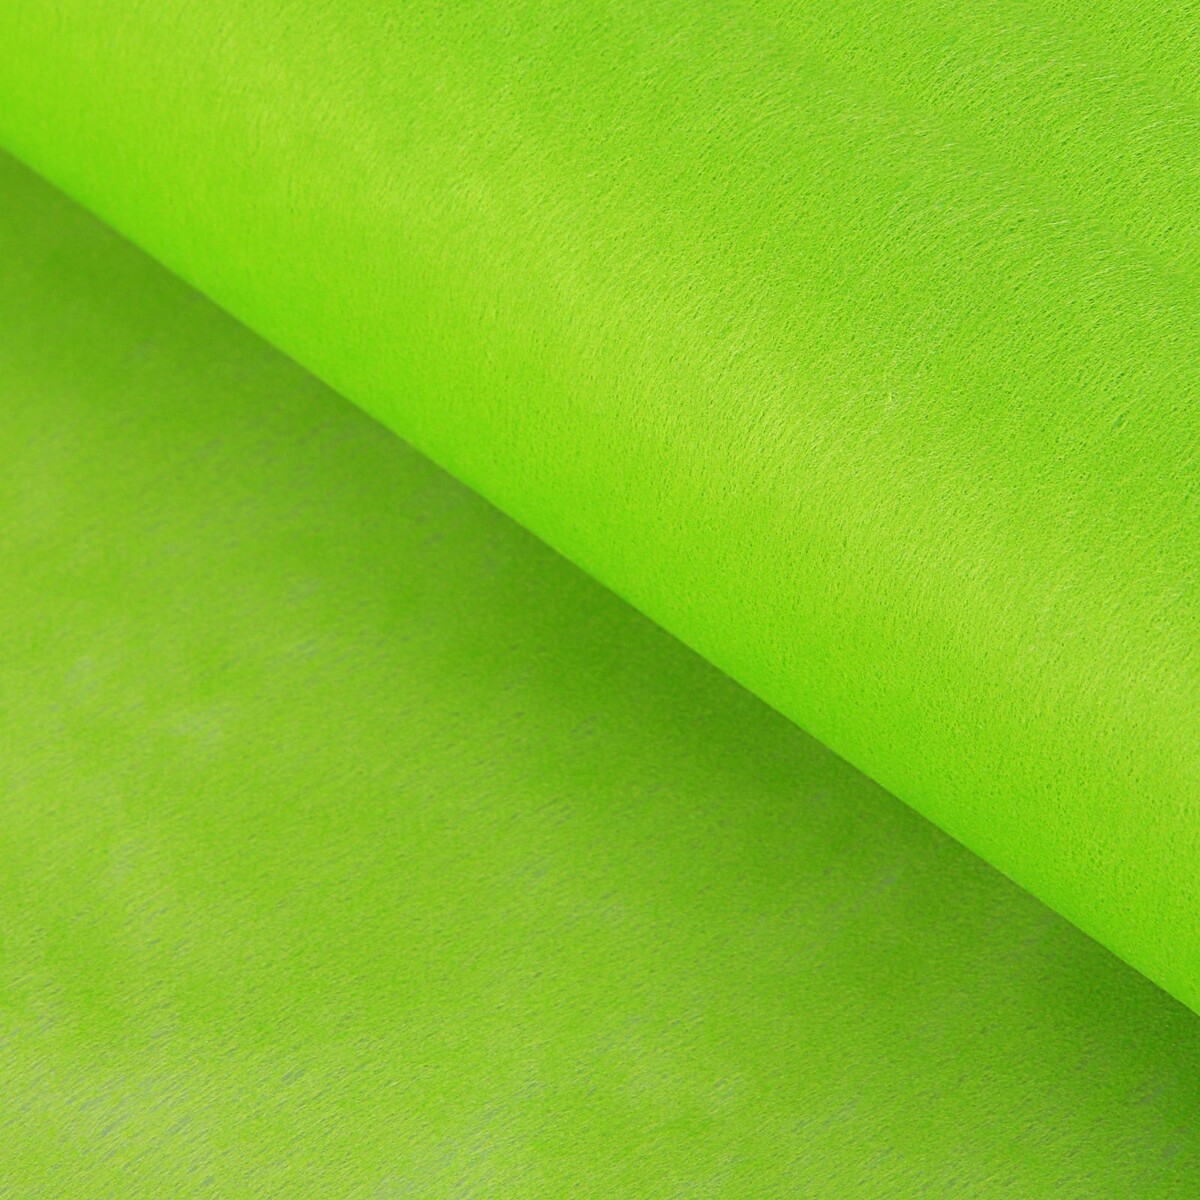 Фетр для упаковок и поделок, однотонный, салатовый, зеленый, двусторонний, рулон 1шт., 0,5 x 20 м мяч для художественной гимнастики однотонный d15см зеленый